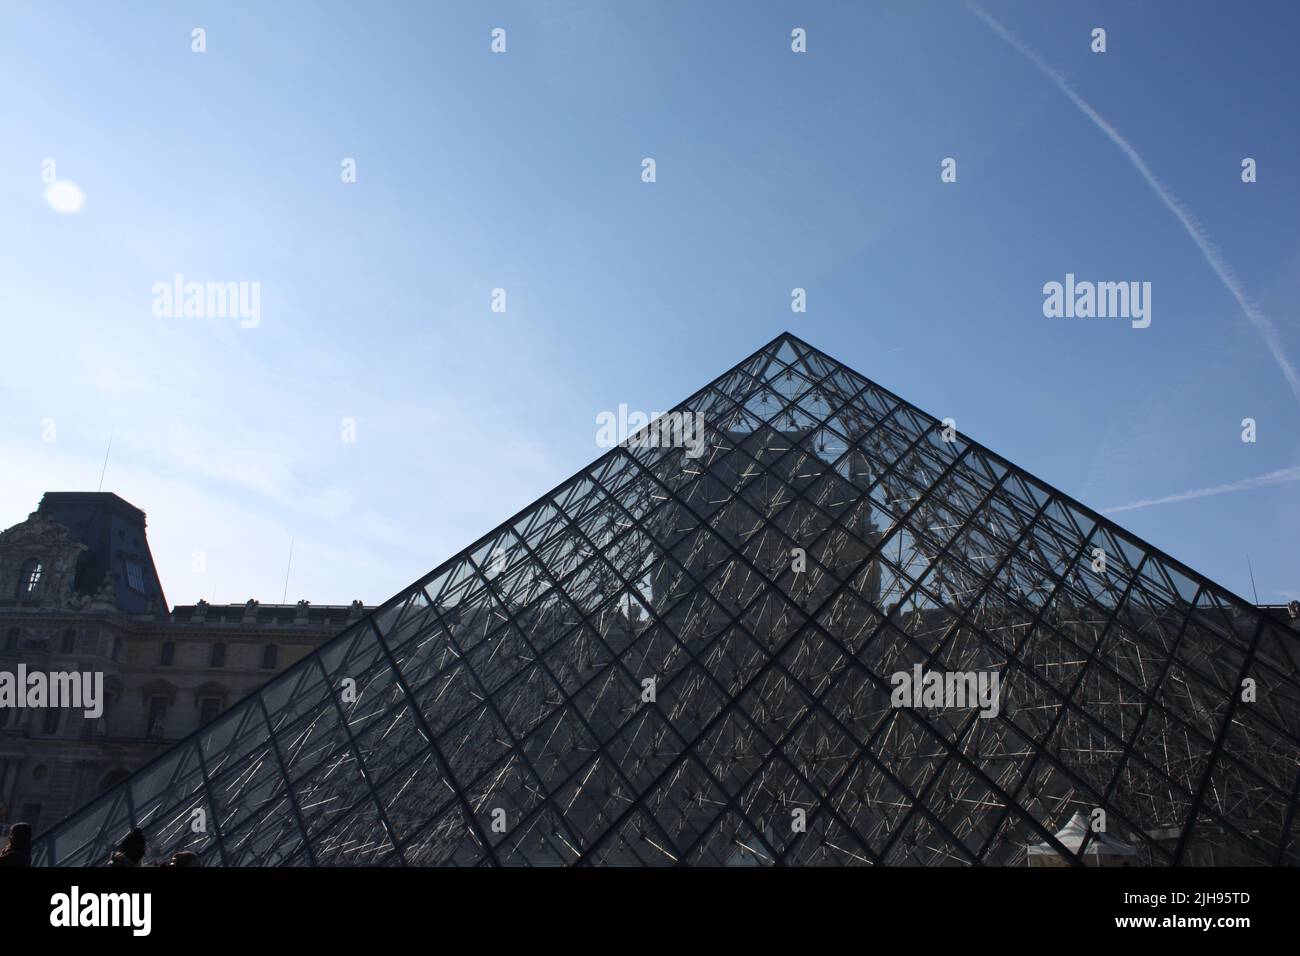 El museo de la Pirámide del Louvre en París, Francia. Foto de stock